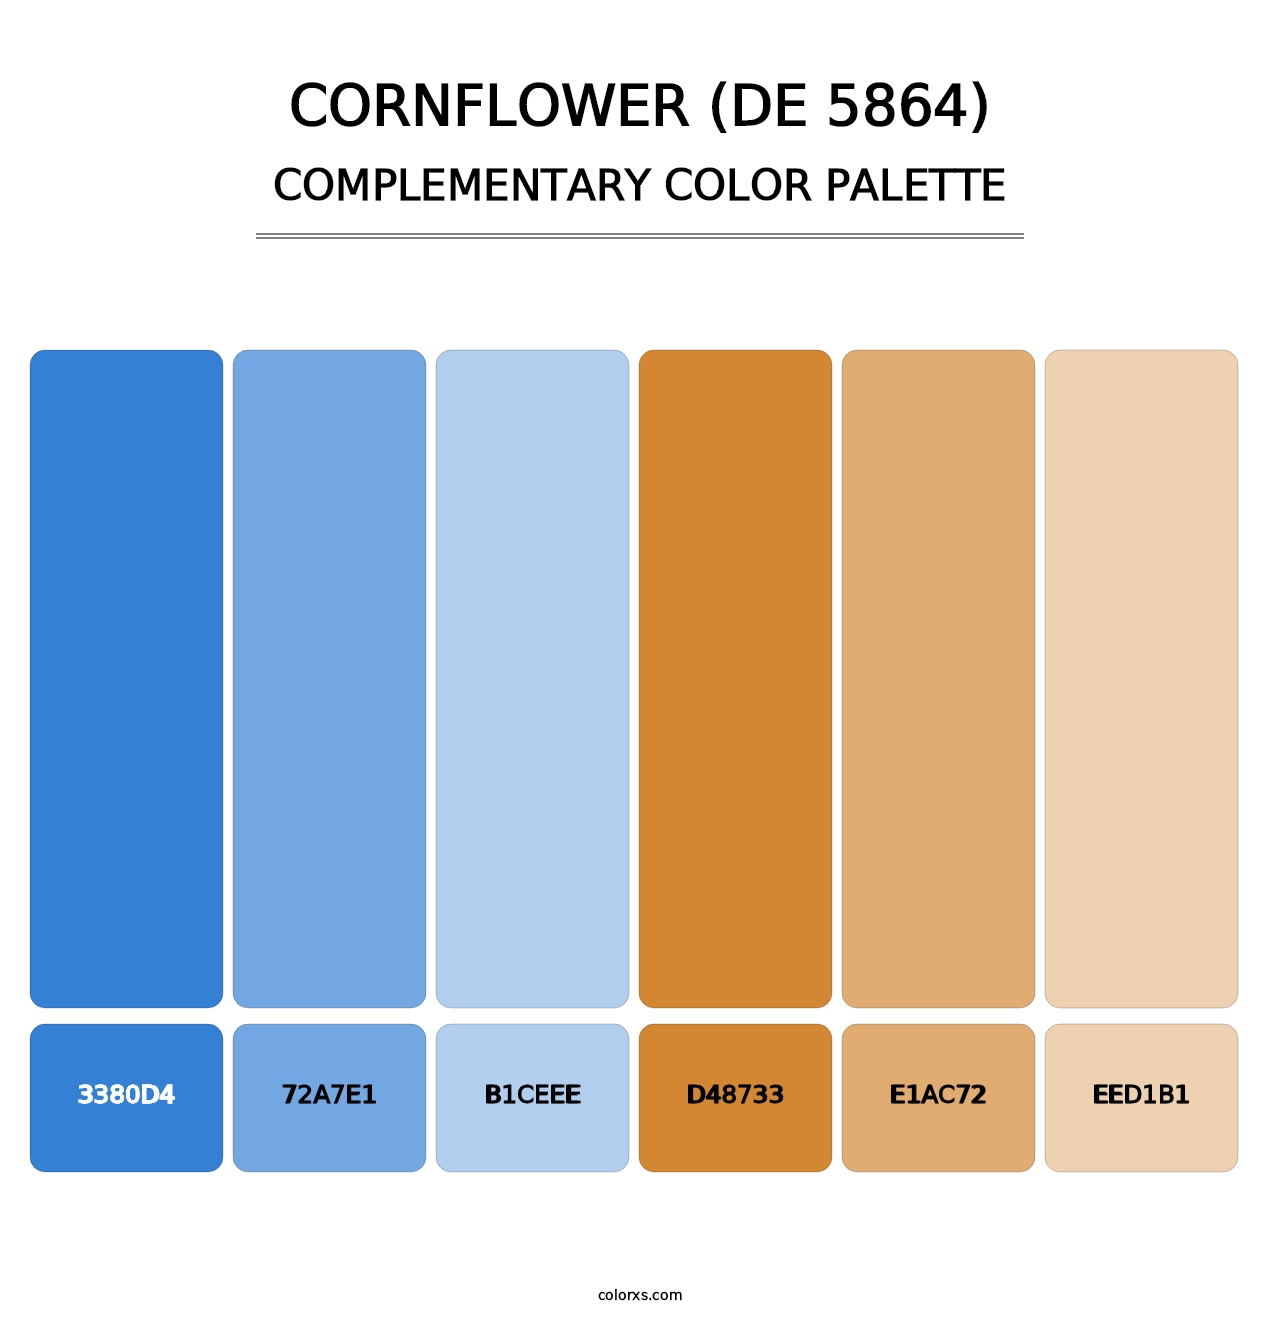 Cornflower (DE 5864) - Complementary Color Palette